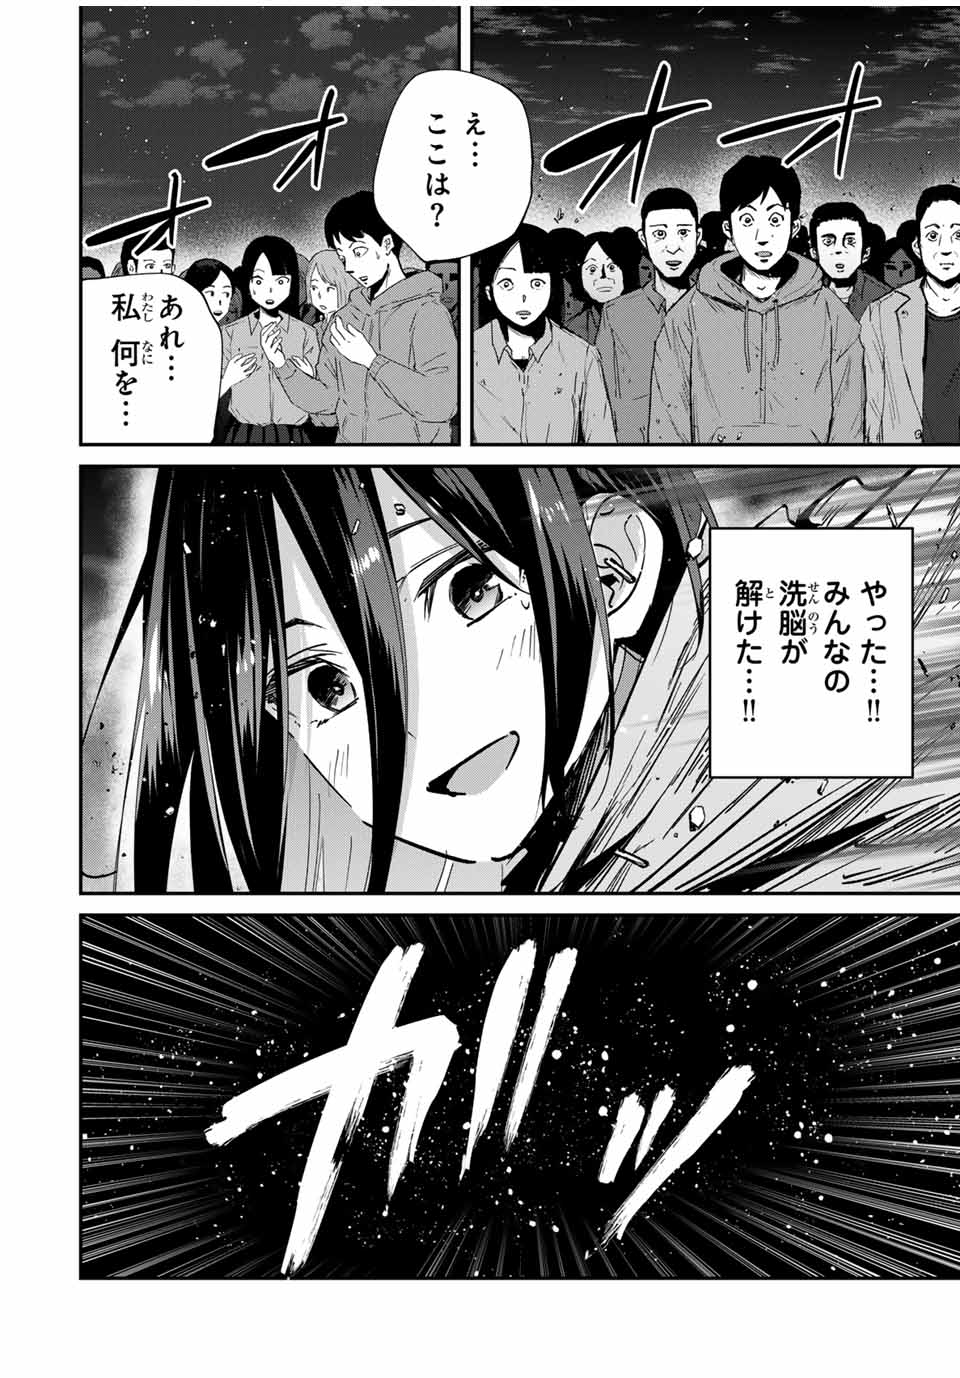 Kono Sekai ga Izure Horobu Koto wo, Ore dake ga Shitte Iru - Chapter 66 - Page 2